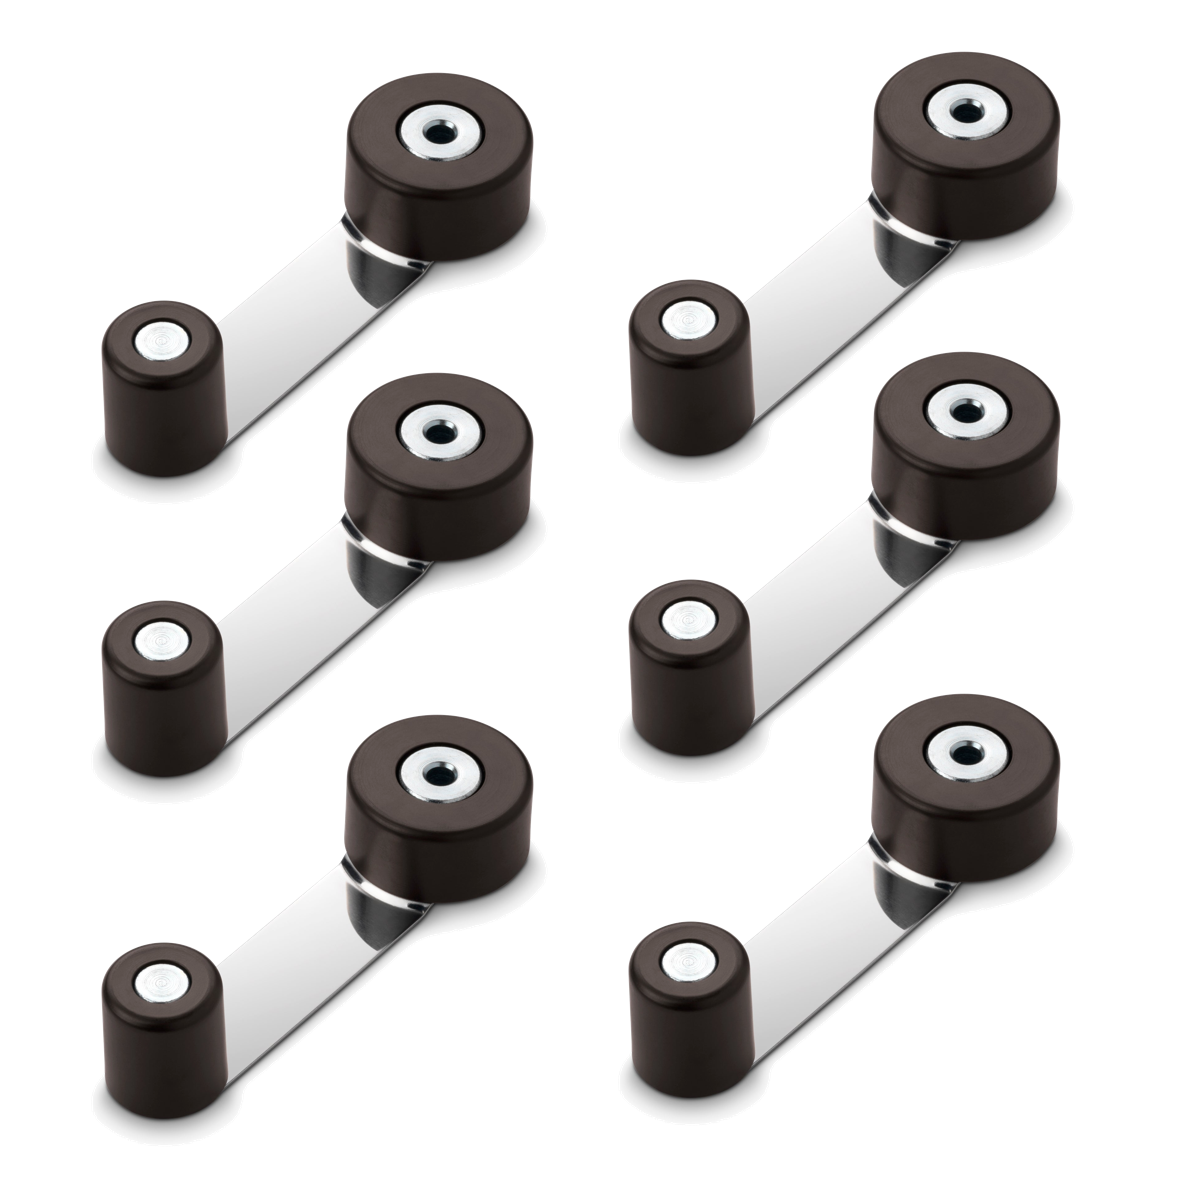 6 retenedores y topes giratorios marrones adhesivos con base metálica para puertas